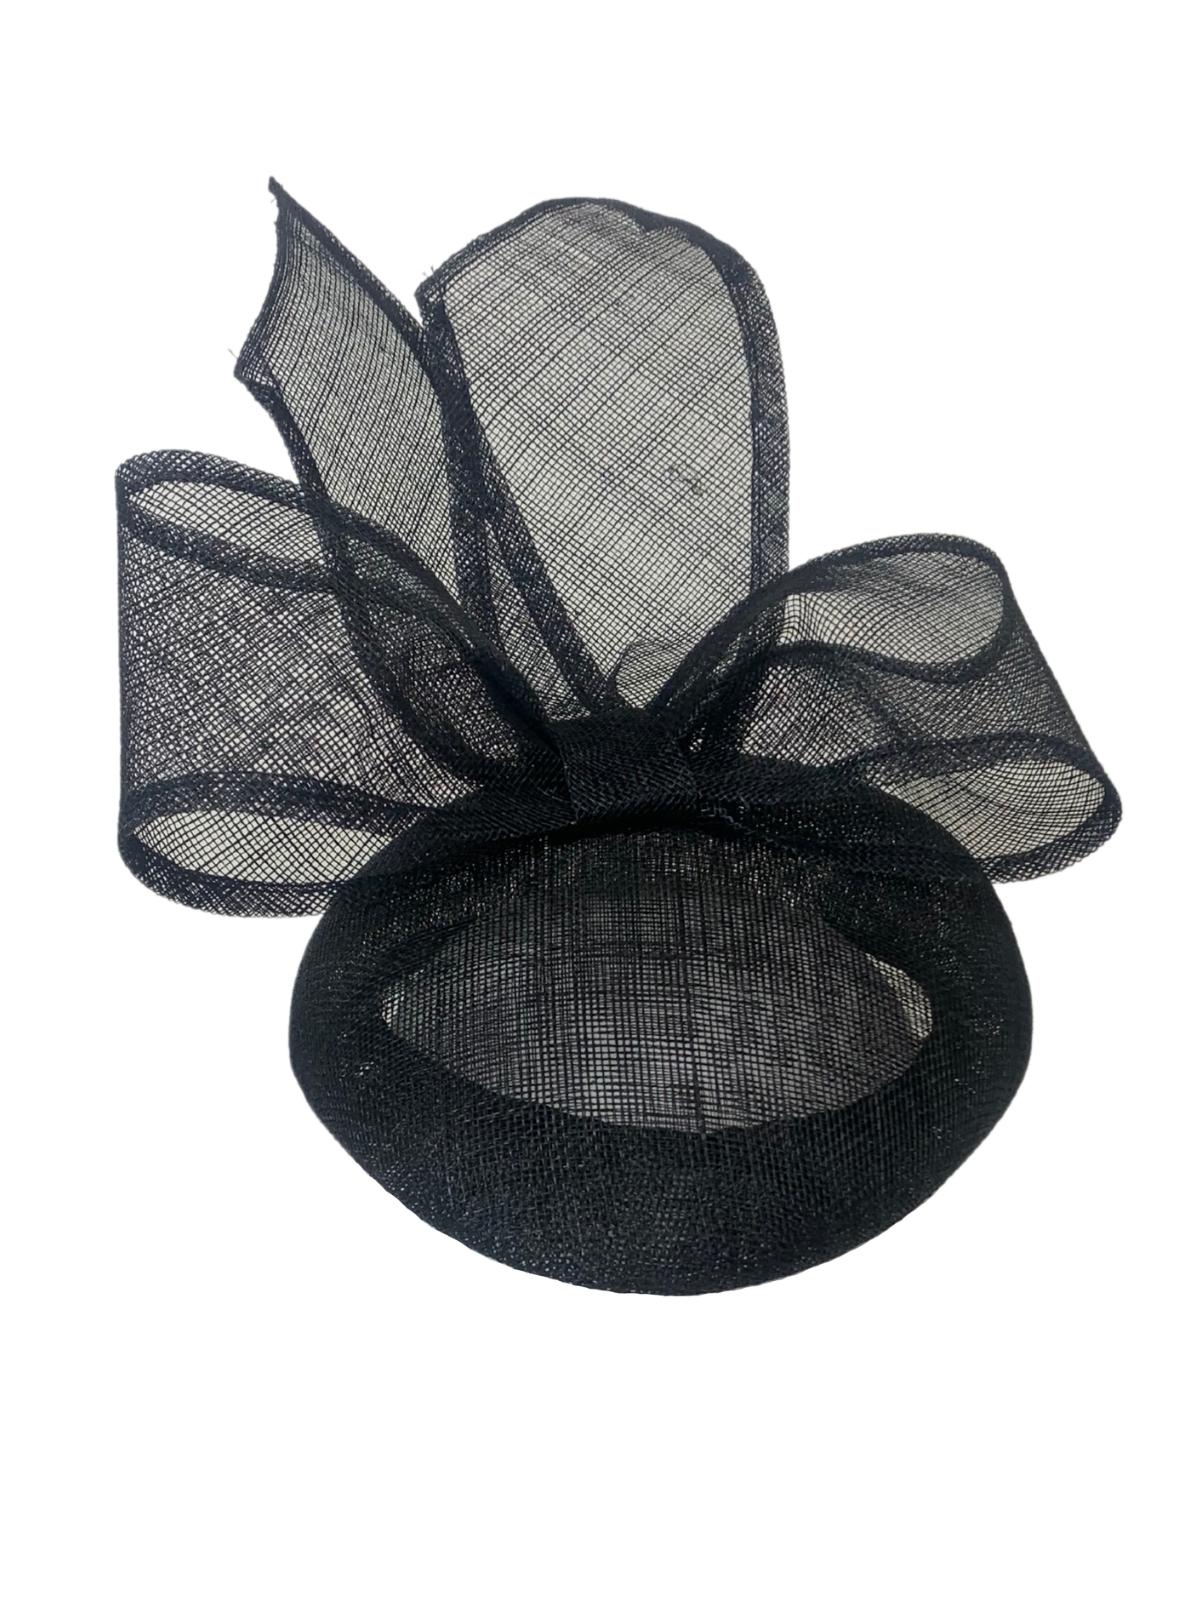 Cheltenham Button Bow Hat / Black